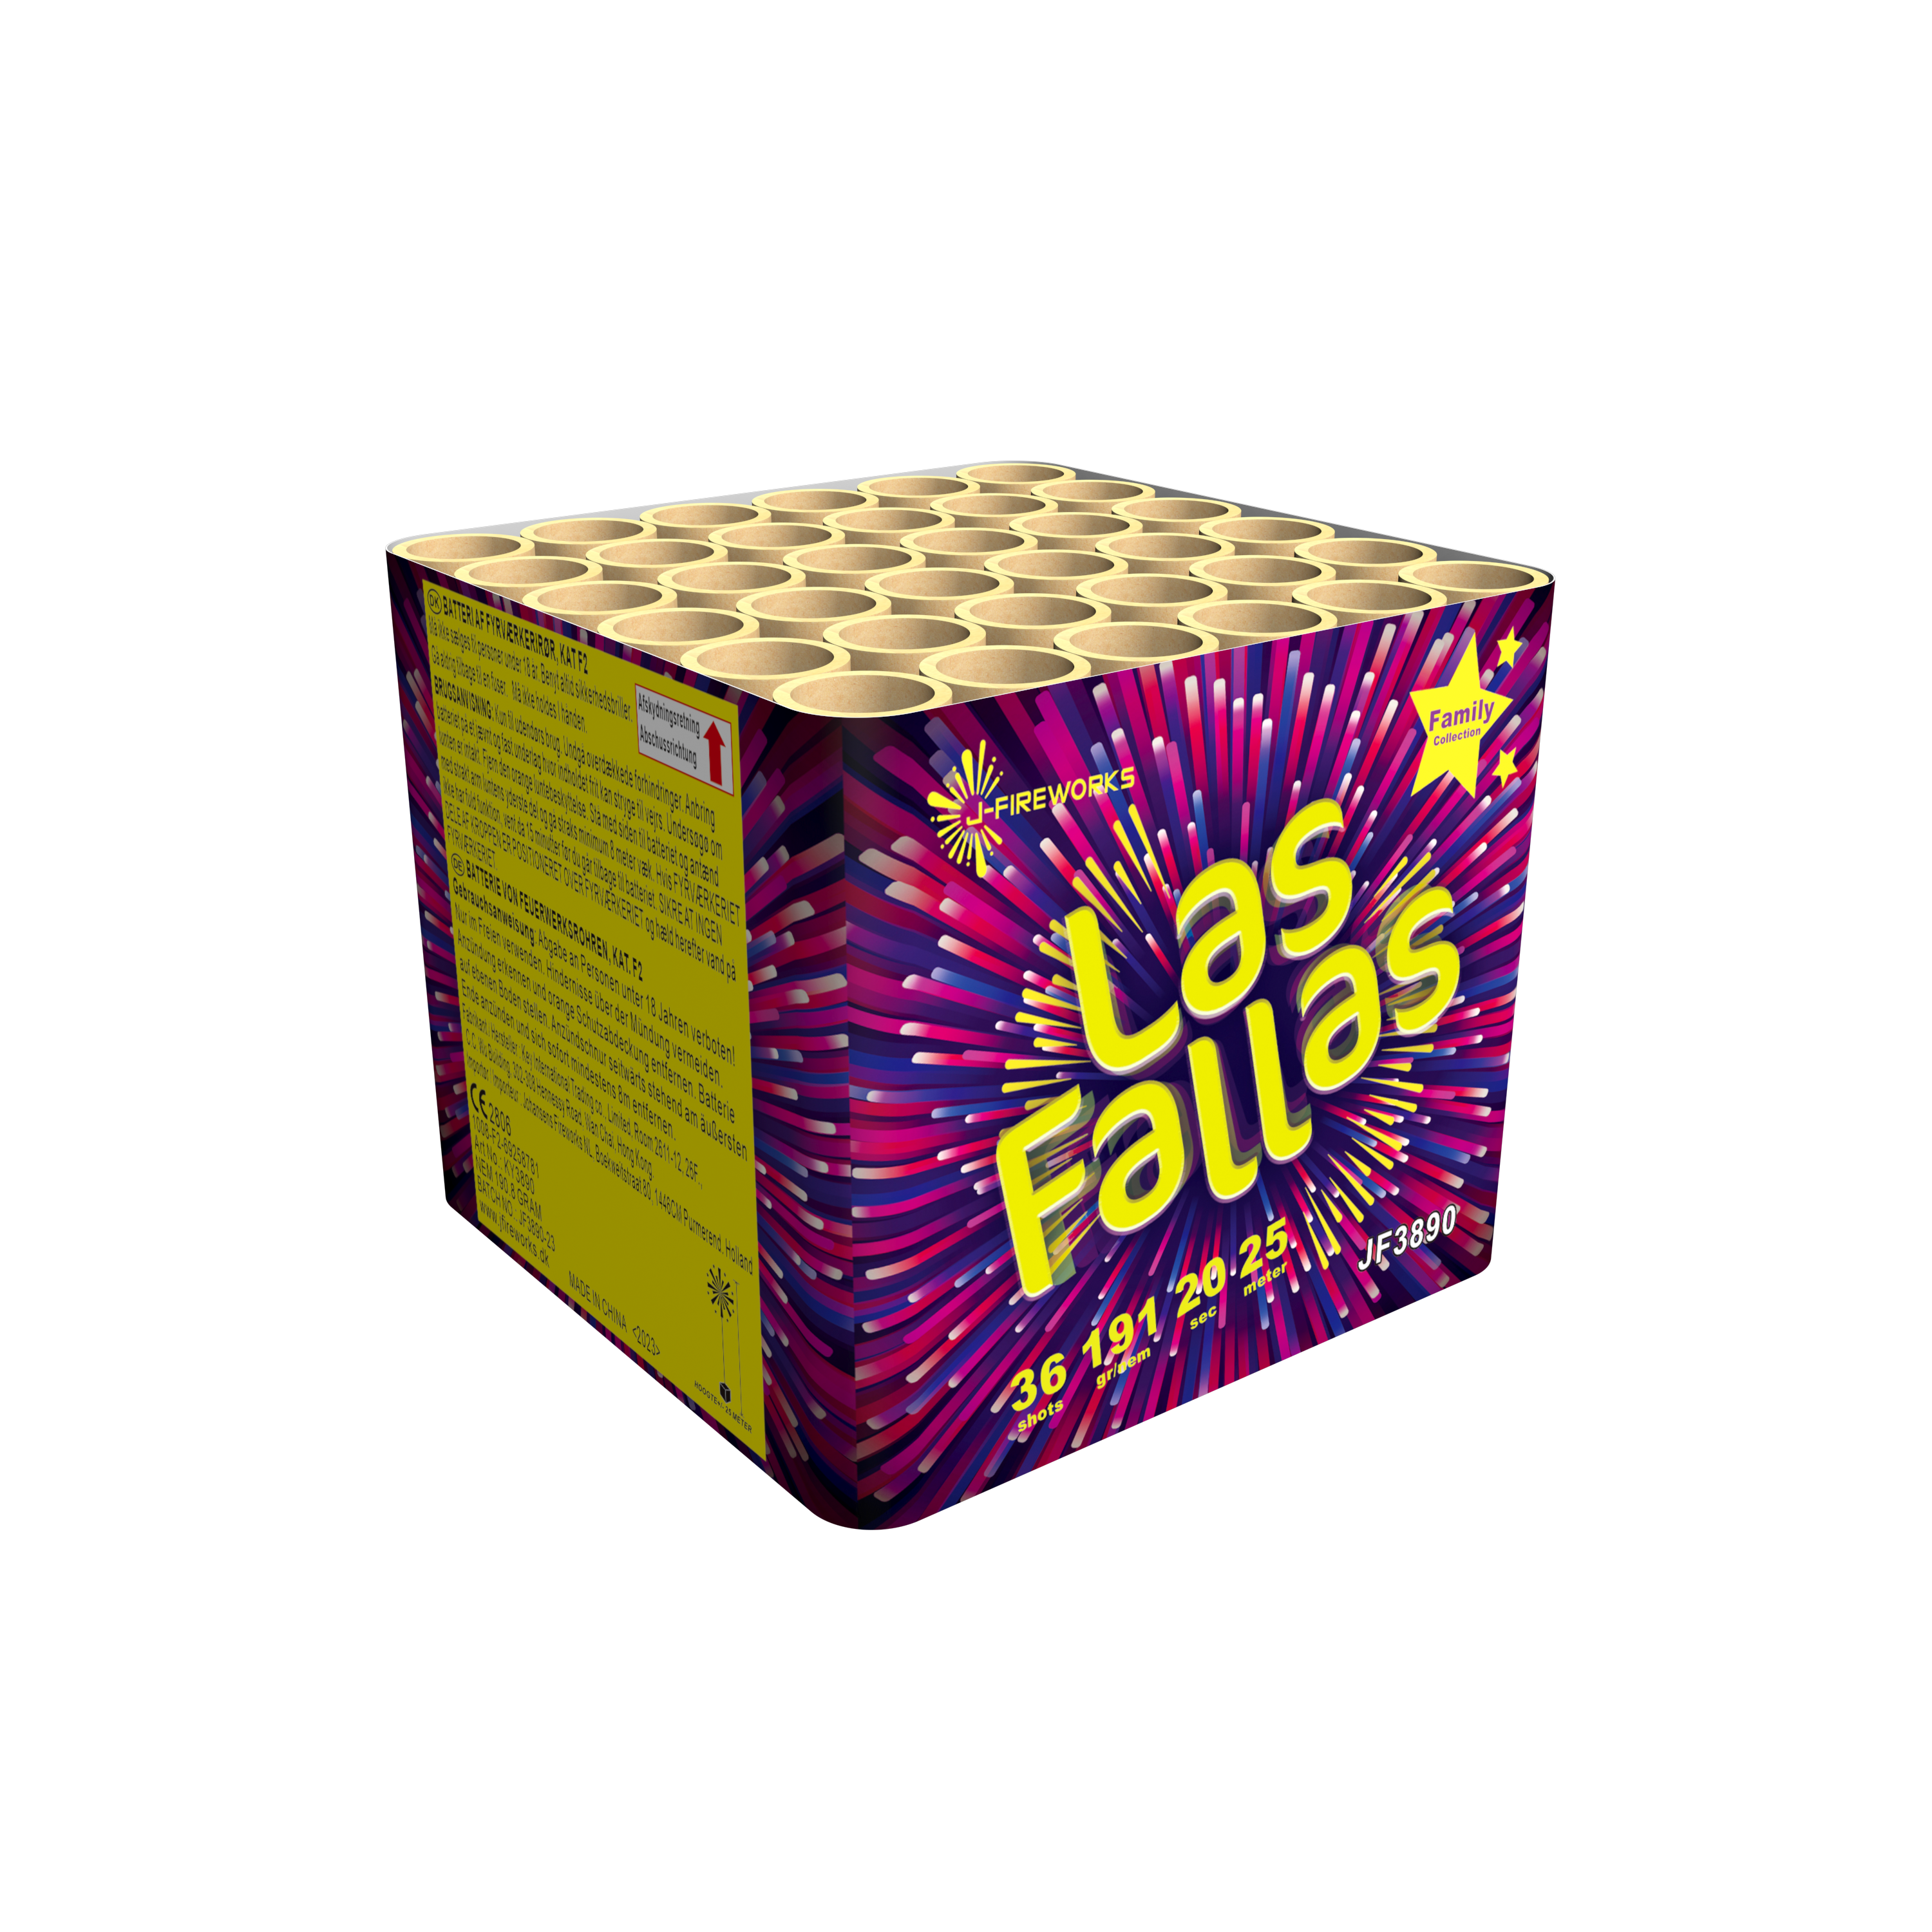 JF3890-a-J-Fireworks-Las-Fallas-36-Schuss-Titansalut-Feuerwerksbatterie_8f1f5c89-bc9b-4bcd-806a-4f1ddaf19682.png